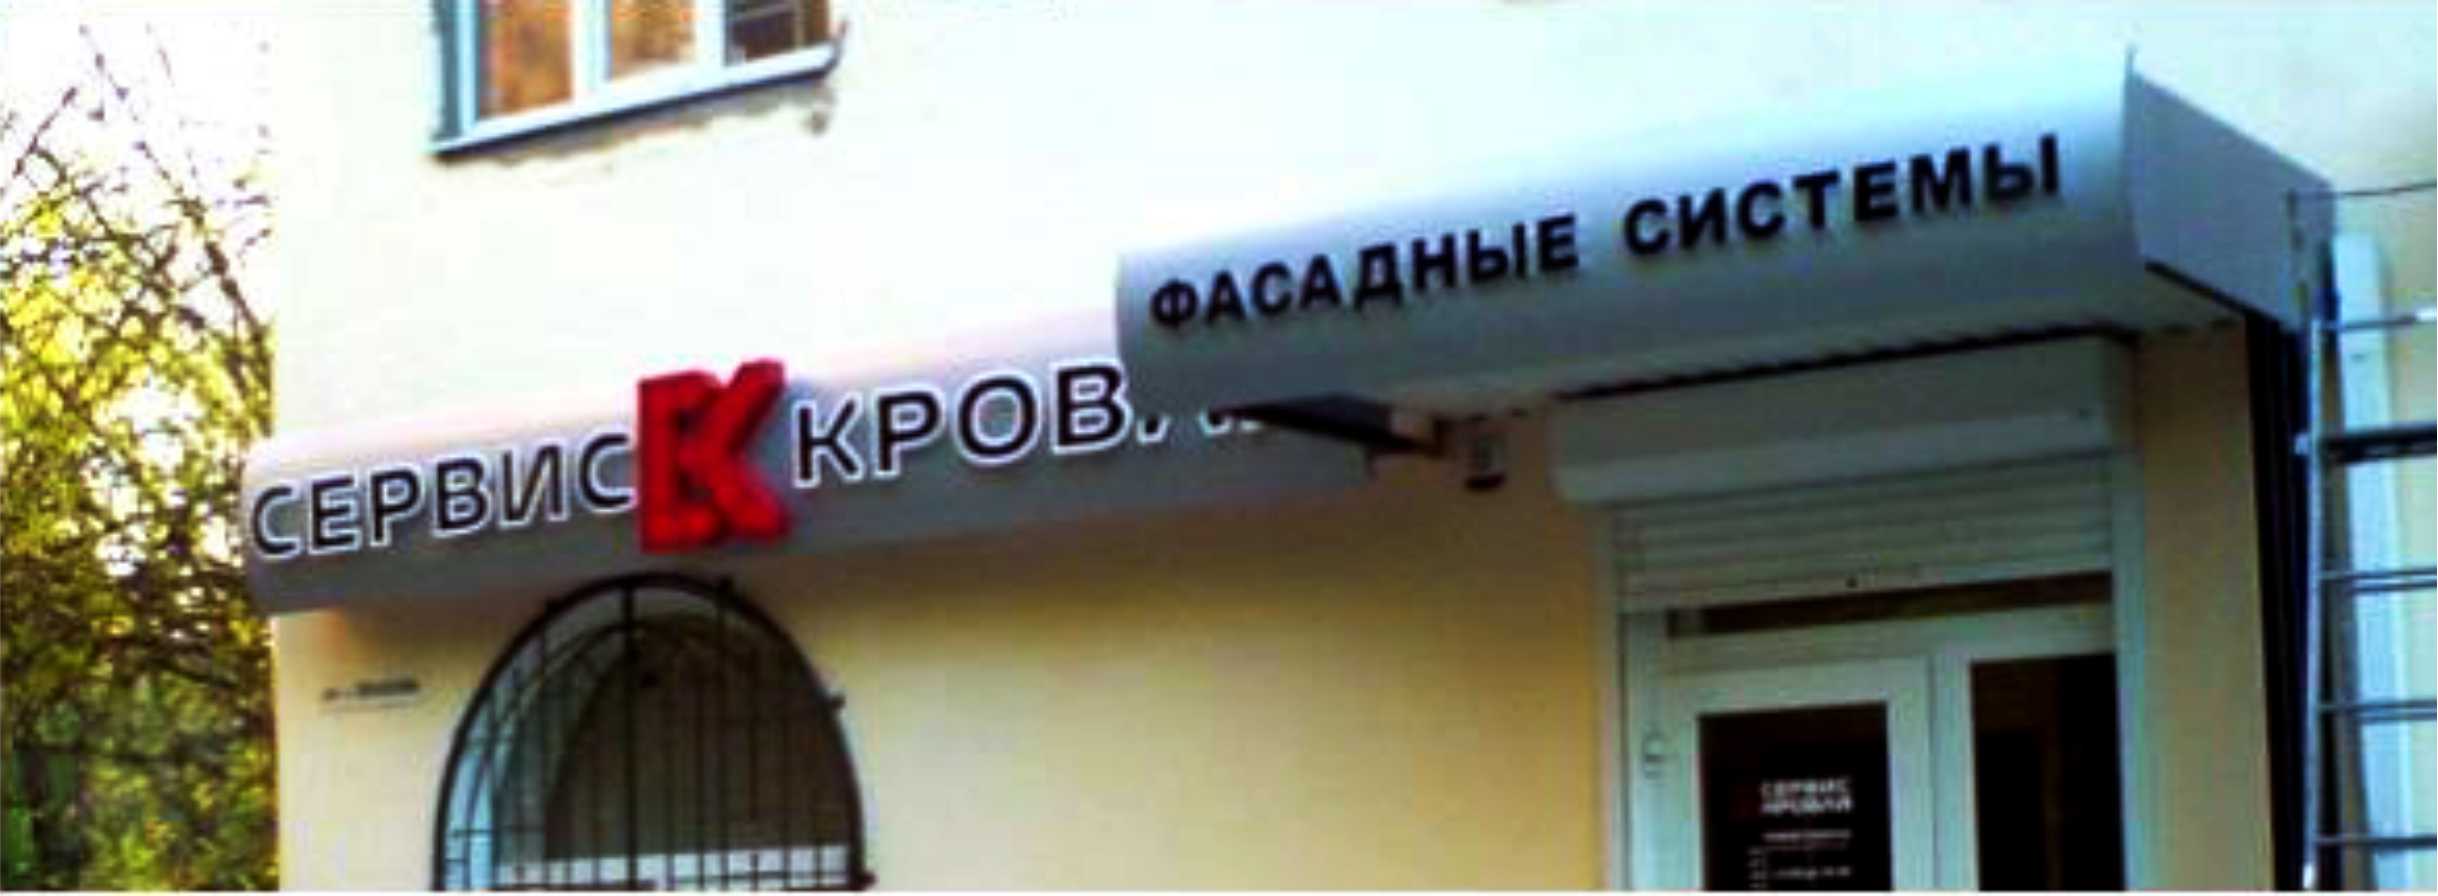 Фотография лайтбокса с объемными буквами в Ростове-на-Дону.